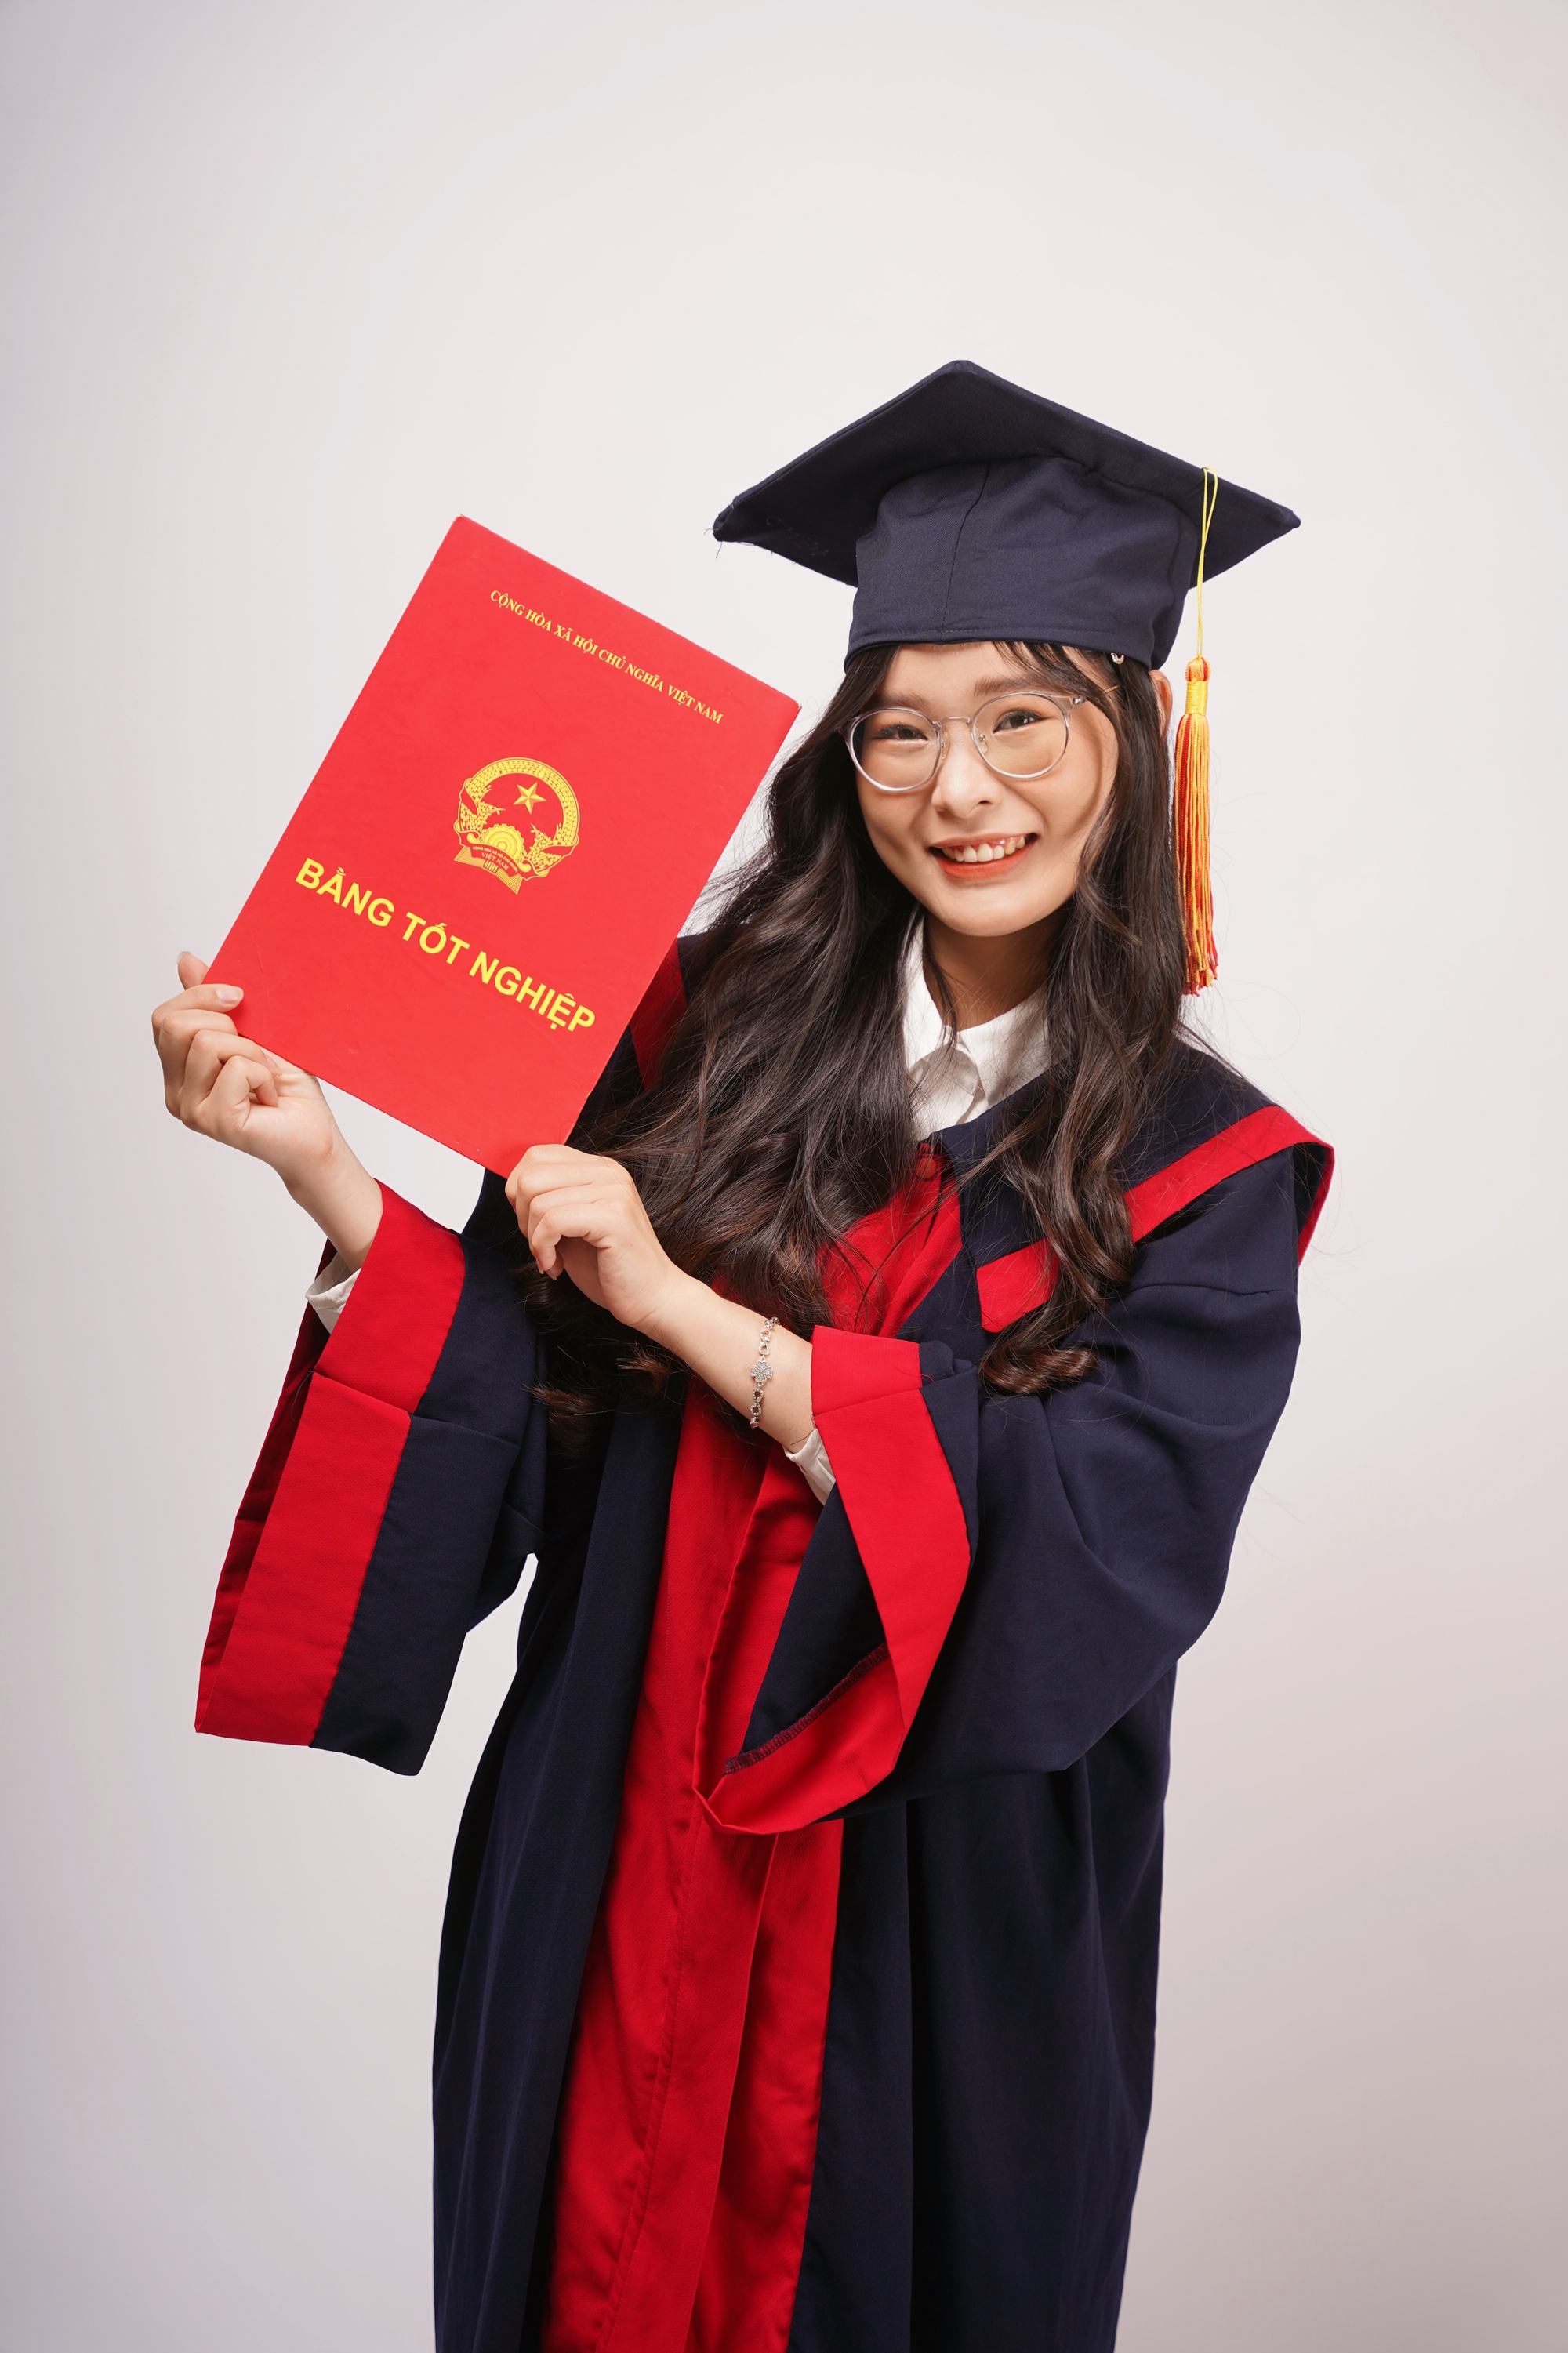 Nữ sinh Bắc Giang là thủ khoa đầu ra, nhận học bổng toàn phần Thạc sĩ tại trường top đầu Trung Quốc - Ảnh 2.